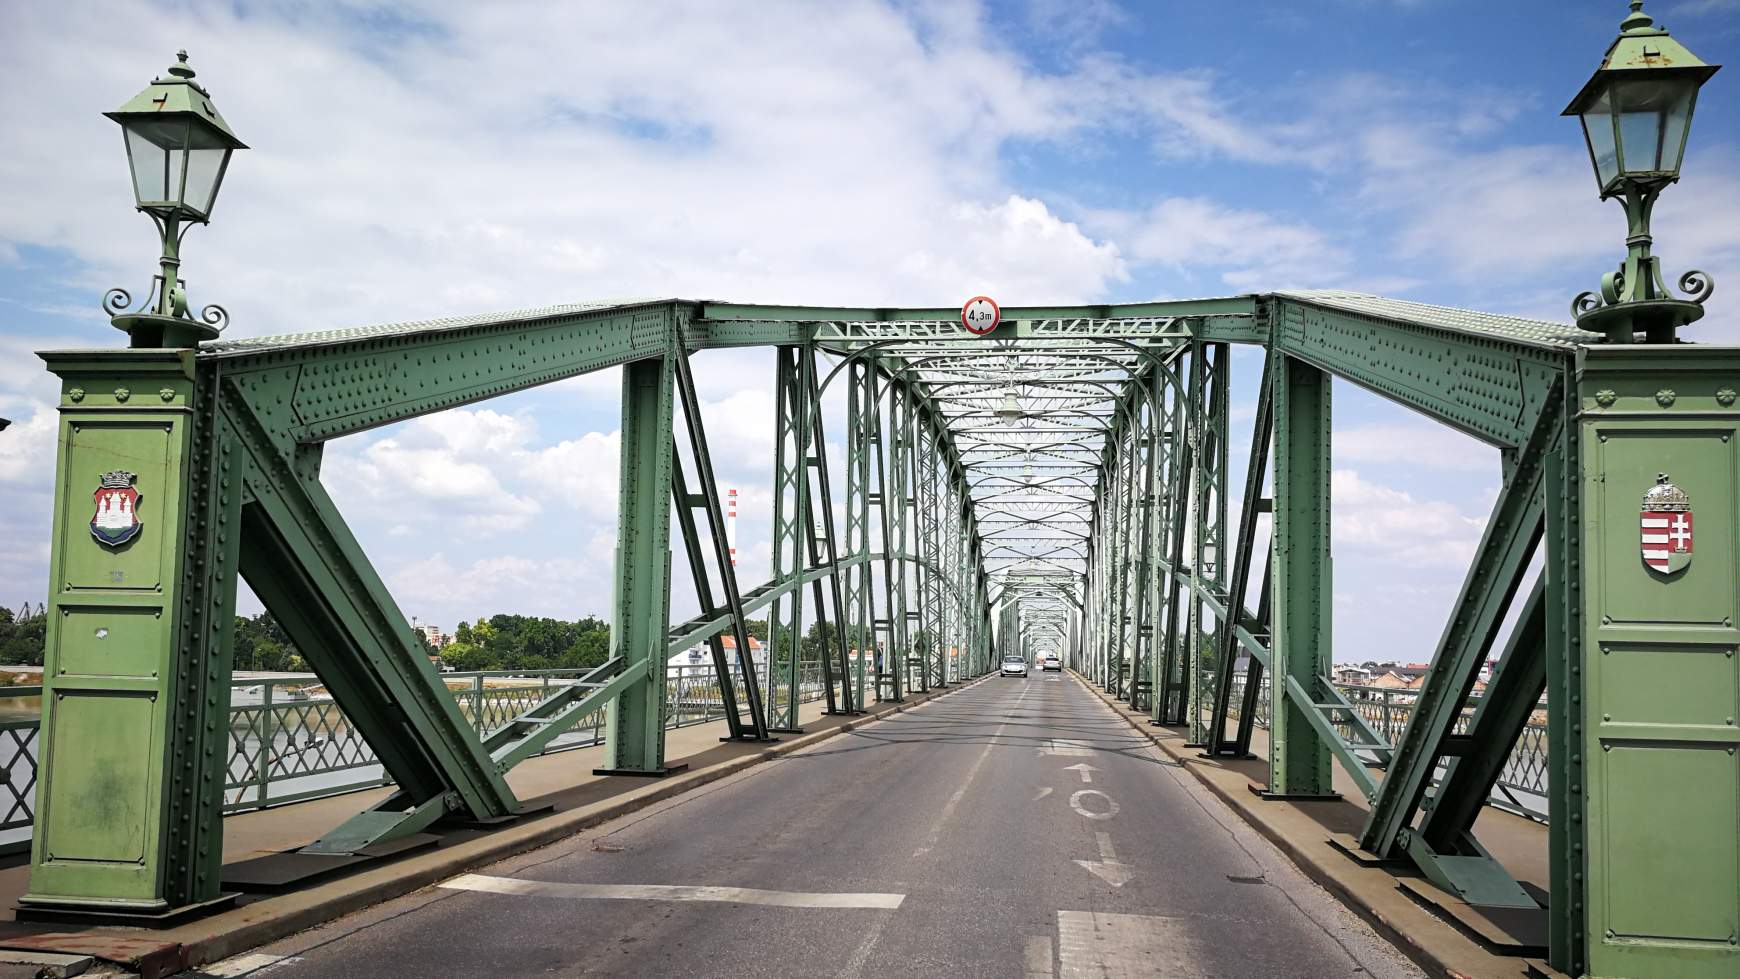 Most a magyarországi hídfőnél sem mondták: "Önöket majd a szlovák kollégák ellenőrzik...".